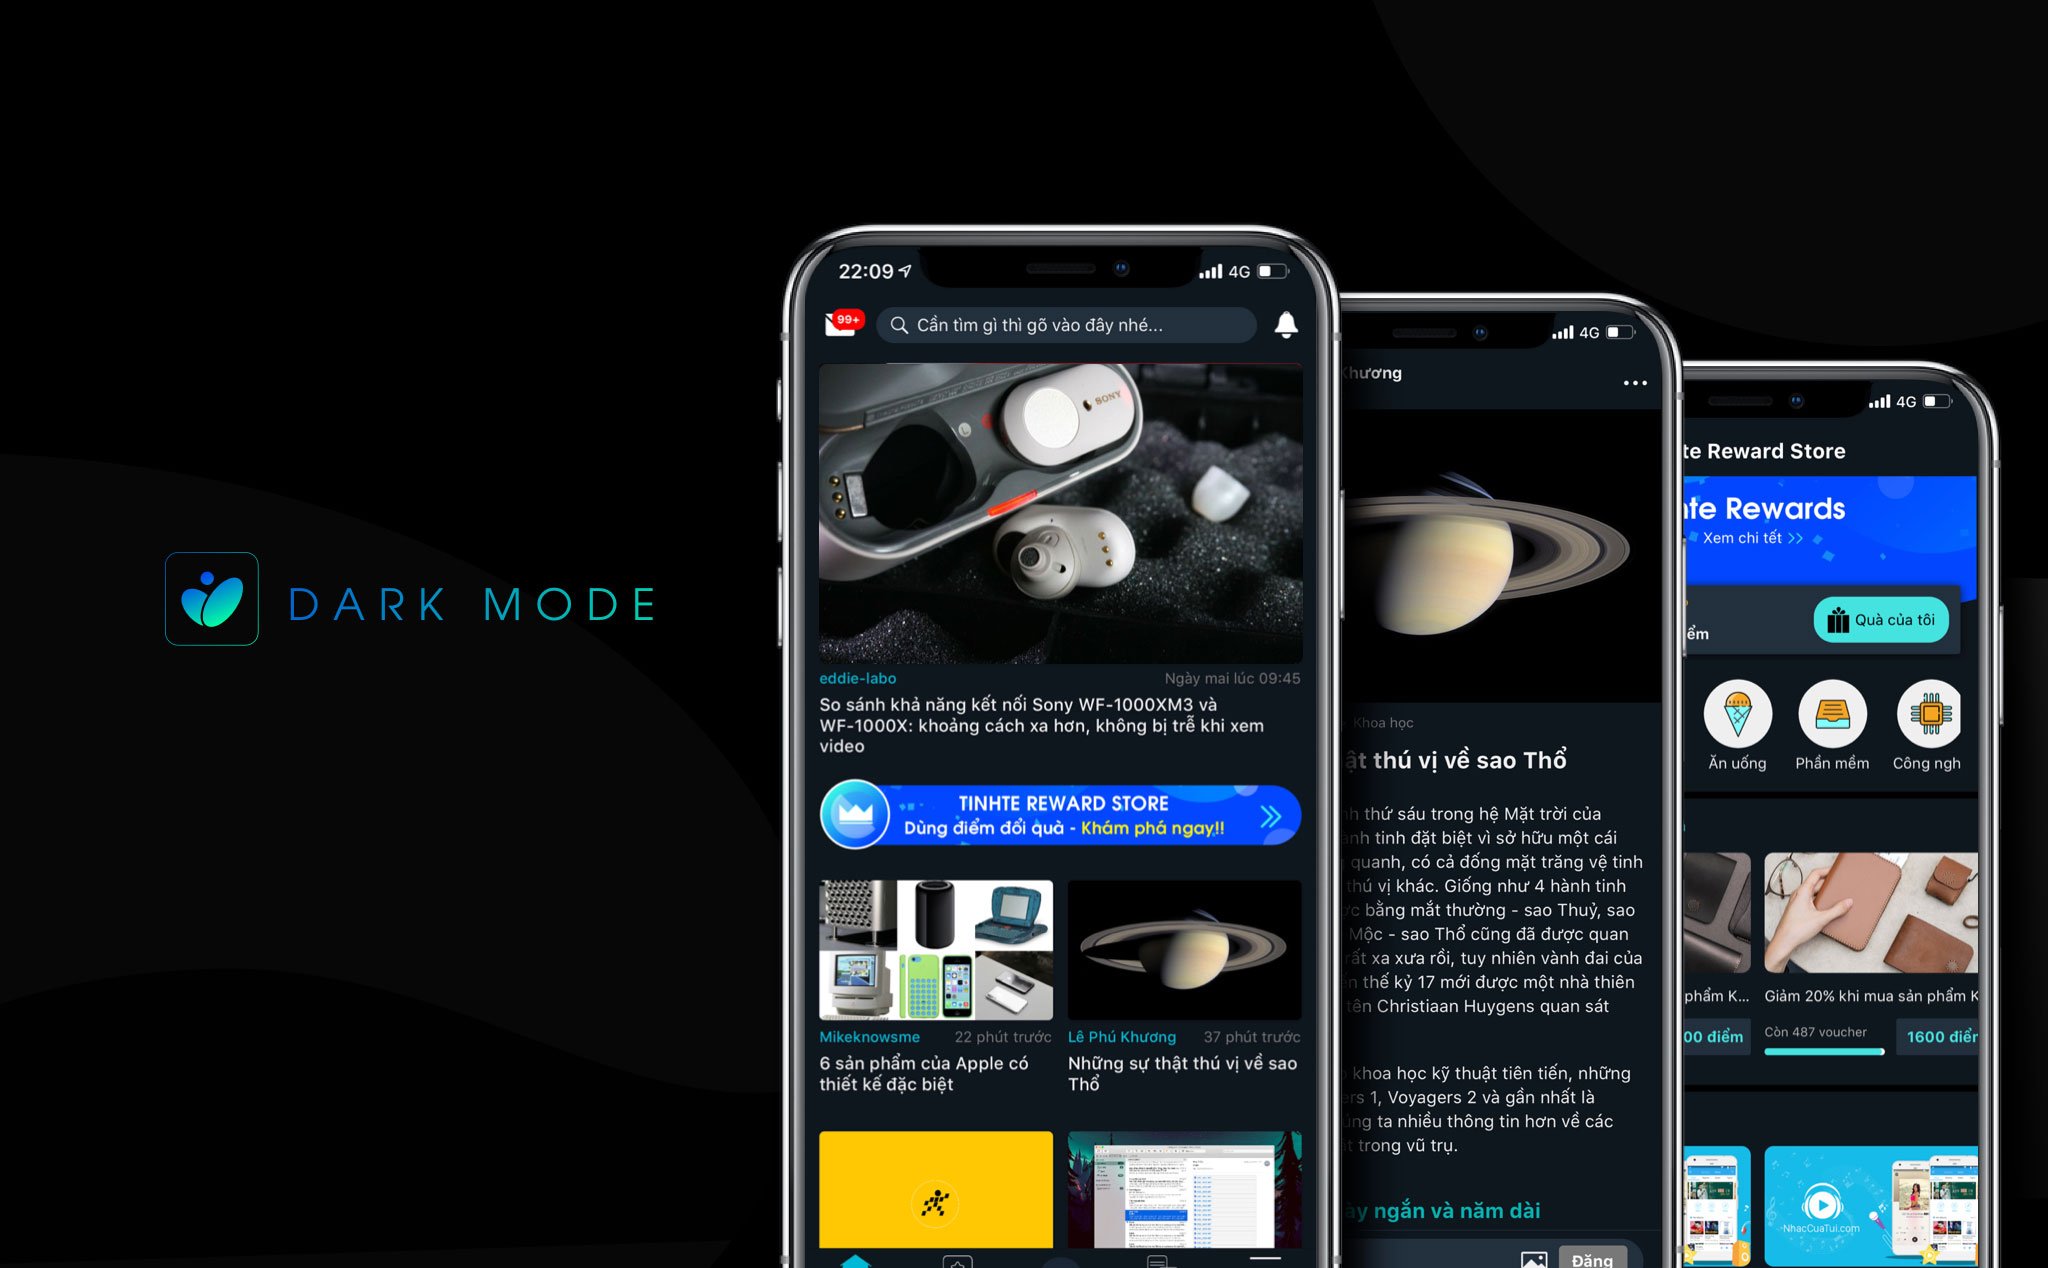 App Tinh tế 8.2 với dark mode đã có hàng, mời anh em trải nghiệm